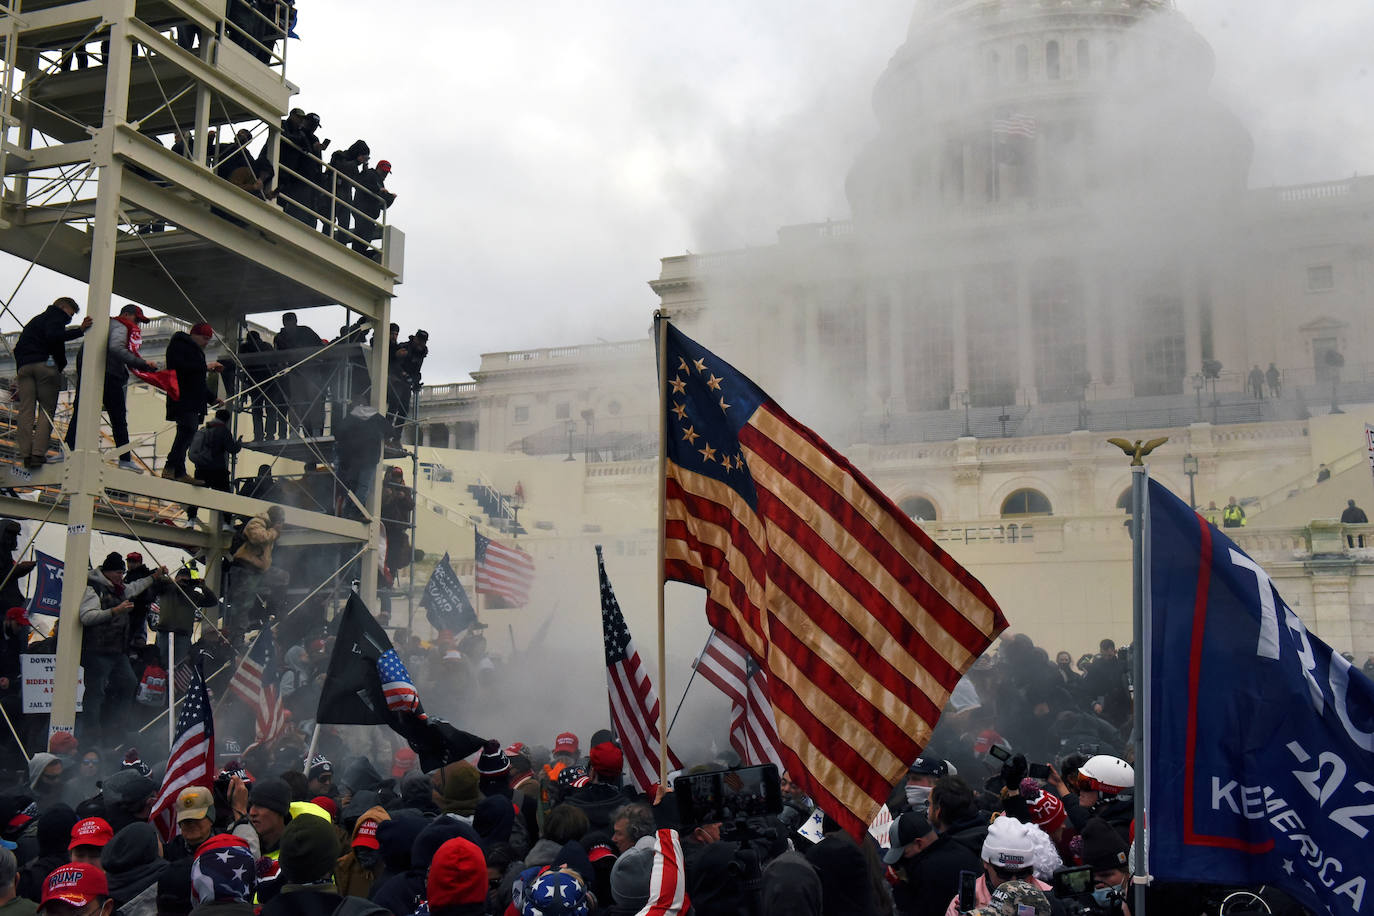 La policía ha empleado gas lacrimógeno para disolver el cerco al Capitolio. No obstante, las autoridades de Washington han decretado el toque de queda para poner fin a la protesta. 